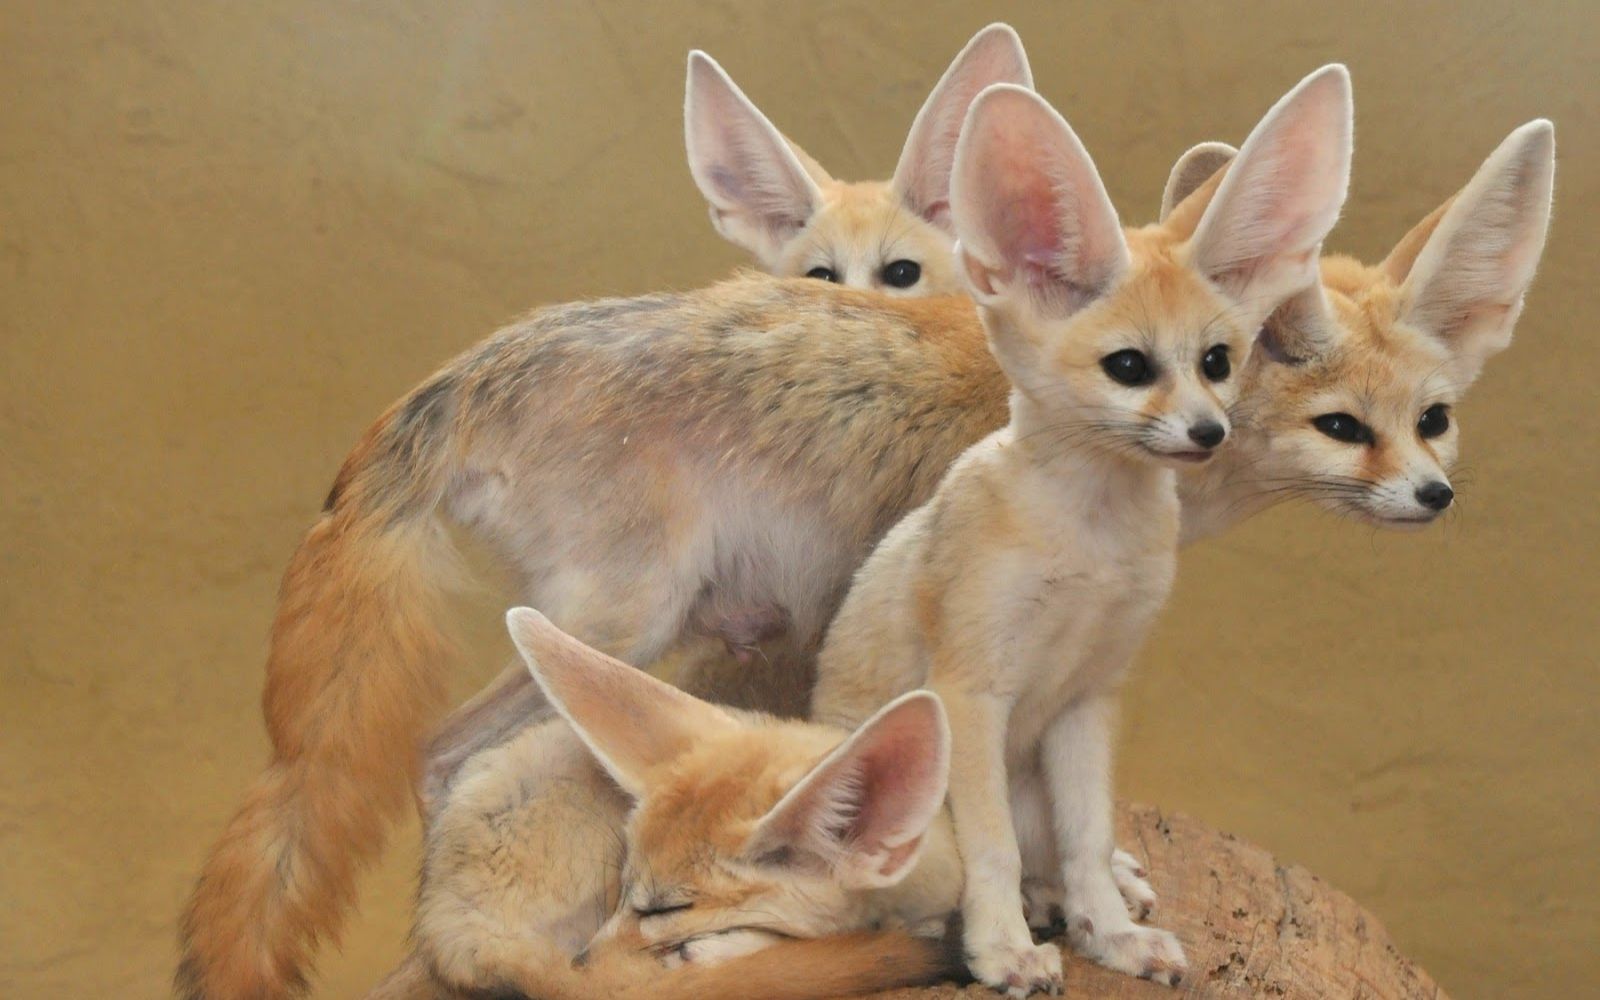 印地安狐狸 库存图片. 图片 包括有 黄色, 本质, 沙漠, 狐狸, 古杰雷特, 哺乳动物, 印第安语, 野生生物 - 42039345